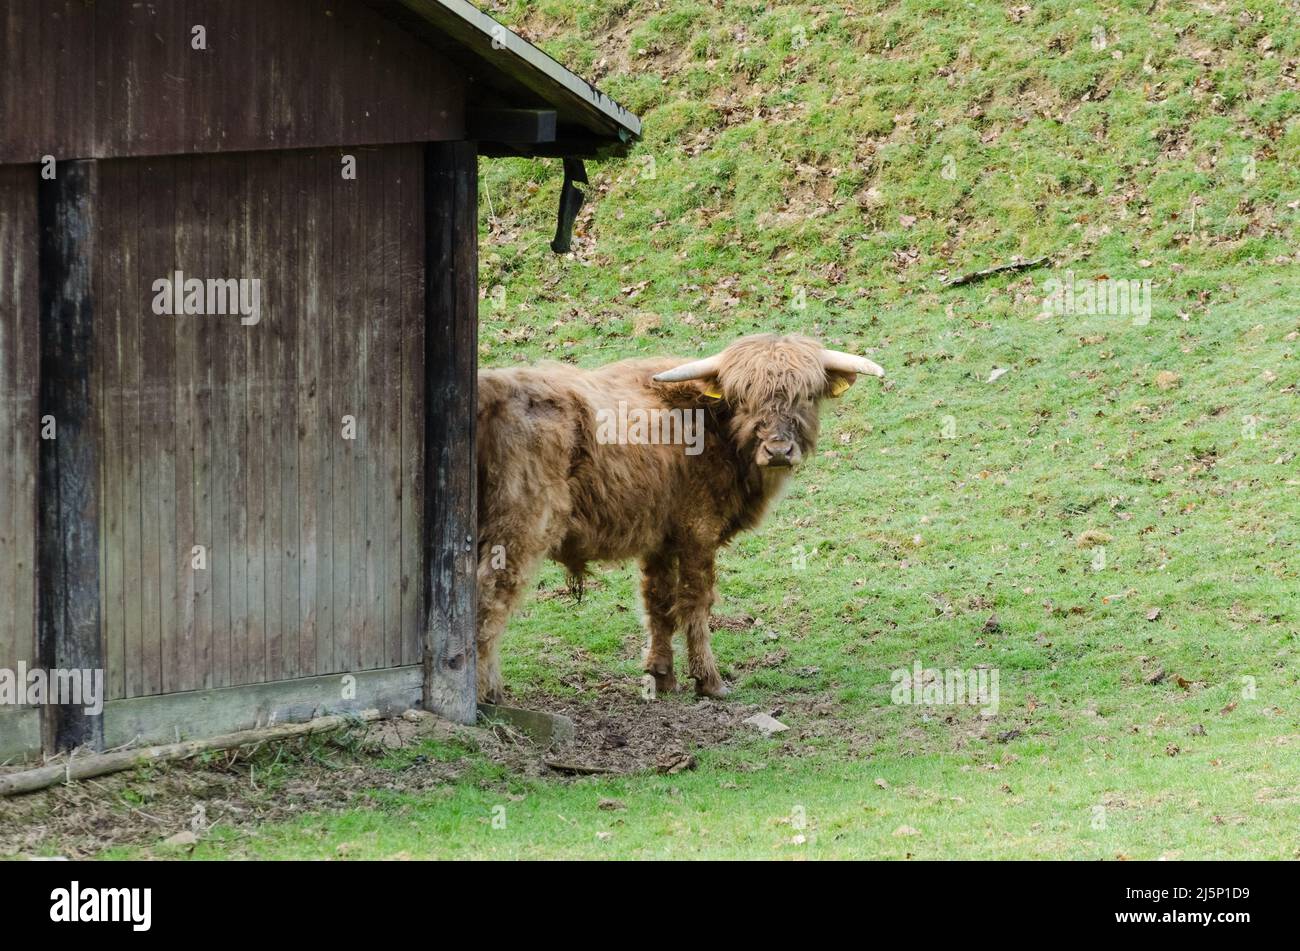 Ganado de pelo largo de la zona alta del oeste, Bos (primigenius) taurus, vaca escocesa en un paddock cerca de un granero de madera Foto de stock